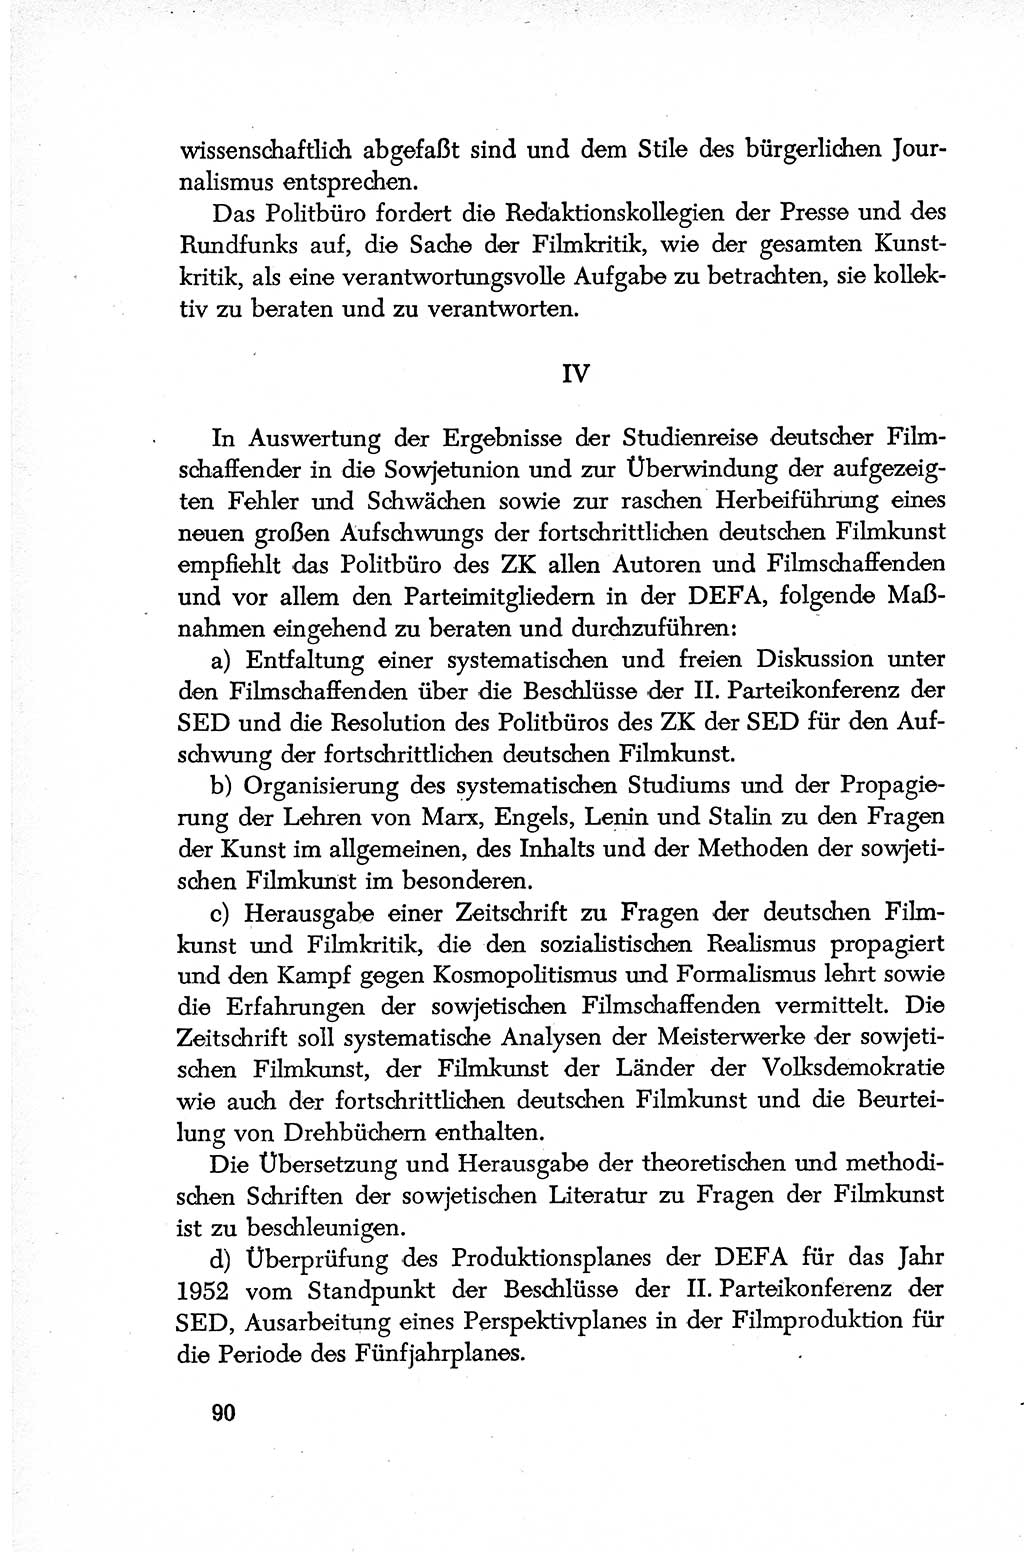 Dokumente der Sozialistischen Einheitspartei Deutschlands (SED) [Deutsche Demokratische Republik (DDR)] 1952-1953, Seite 90 (Dok. SED DDR 1952-1953, S. 90)